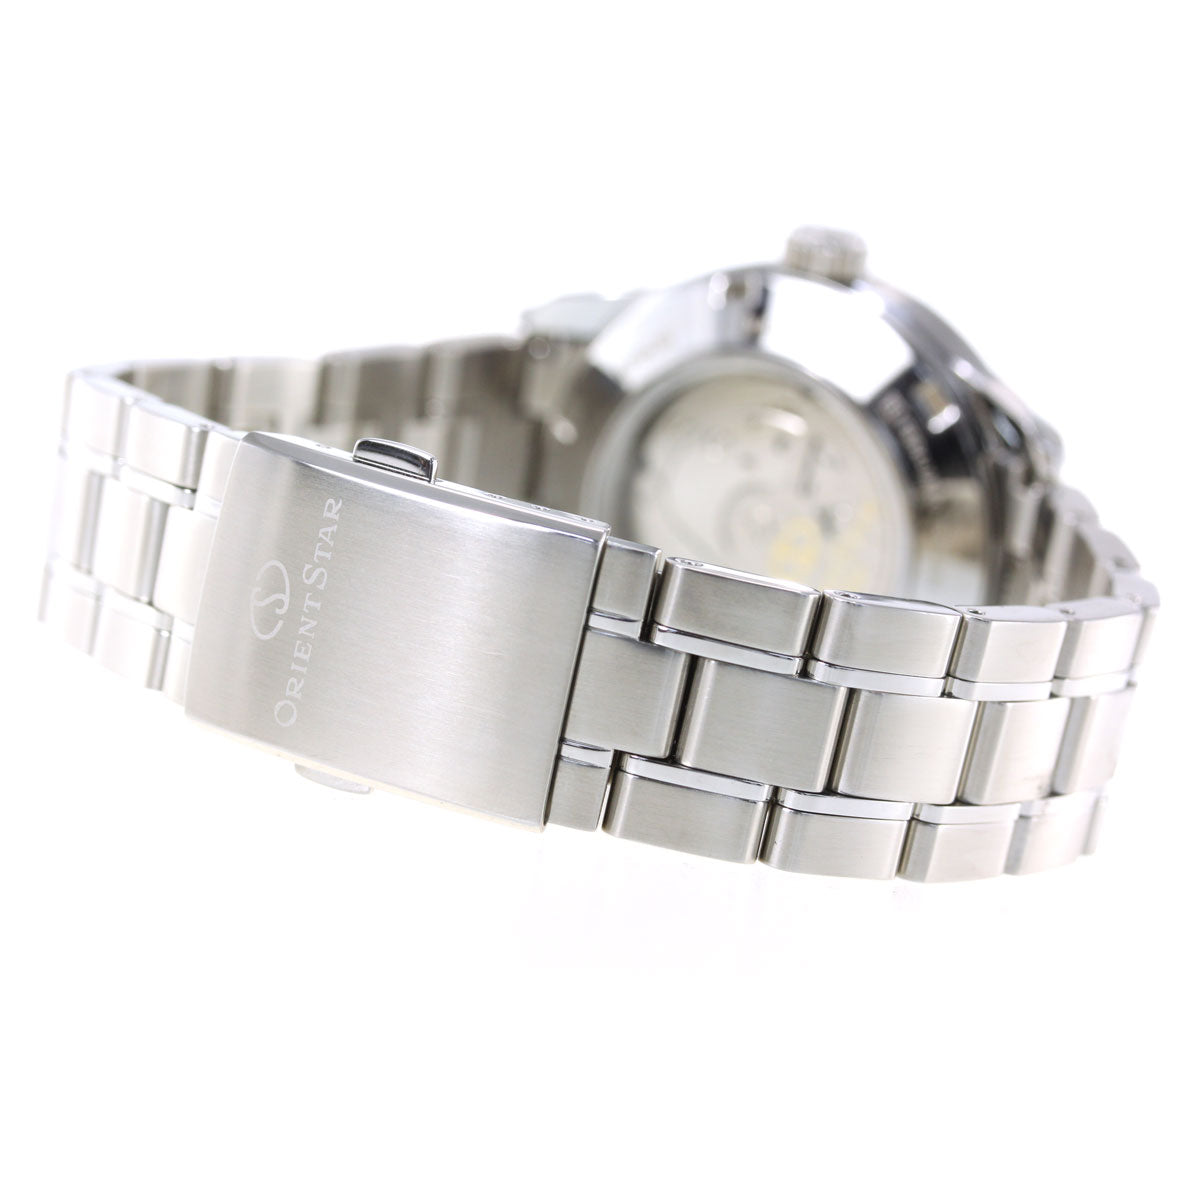 オリエントスター ORIENT STAR 腕時計 メンズ 自動巻き 機械式 コンテンポラリー CONTEMPORALY セミスケルトン RK-AT0003E